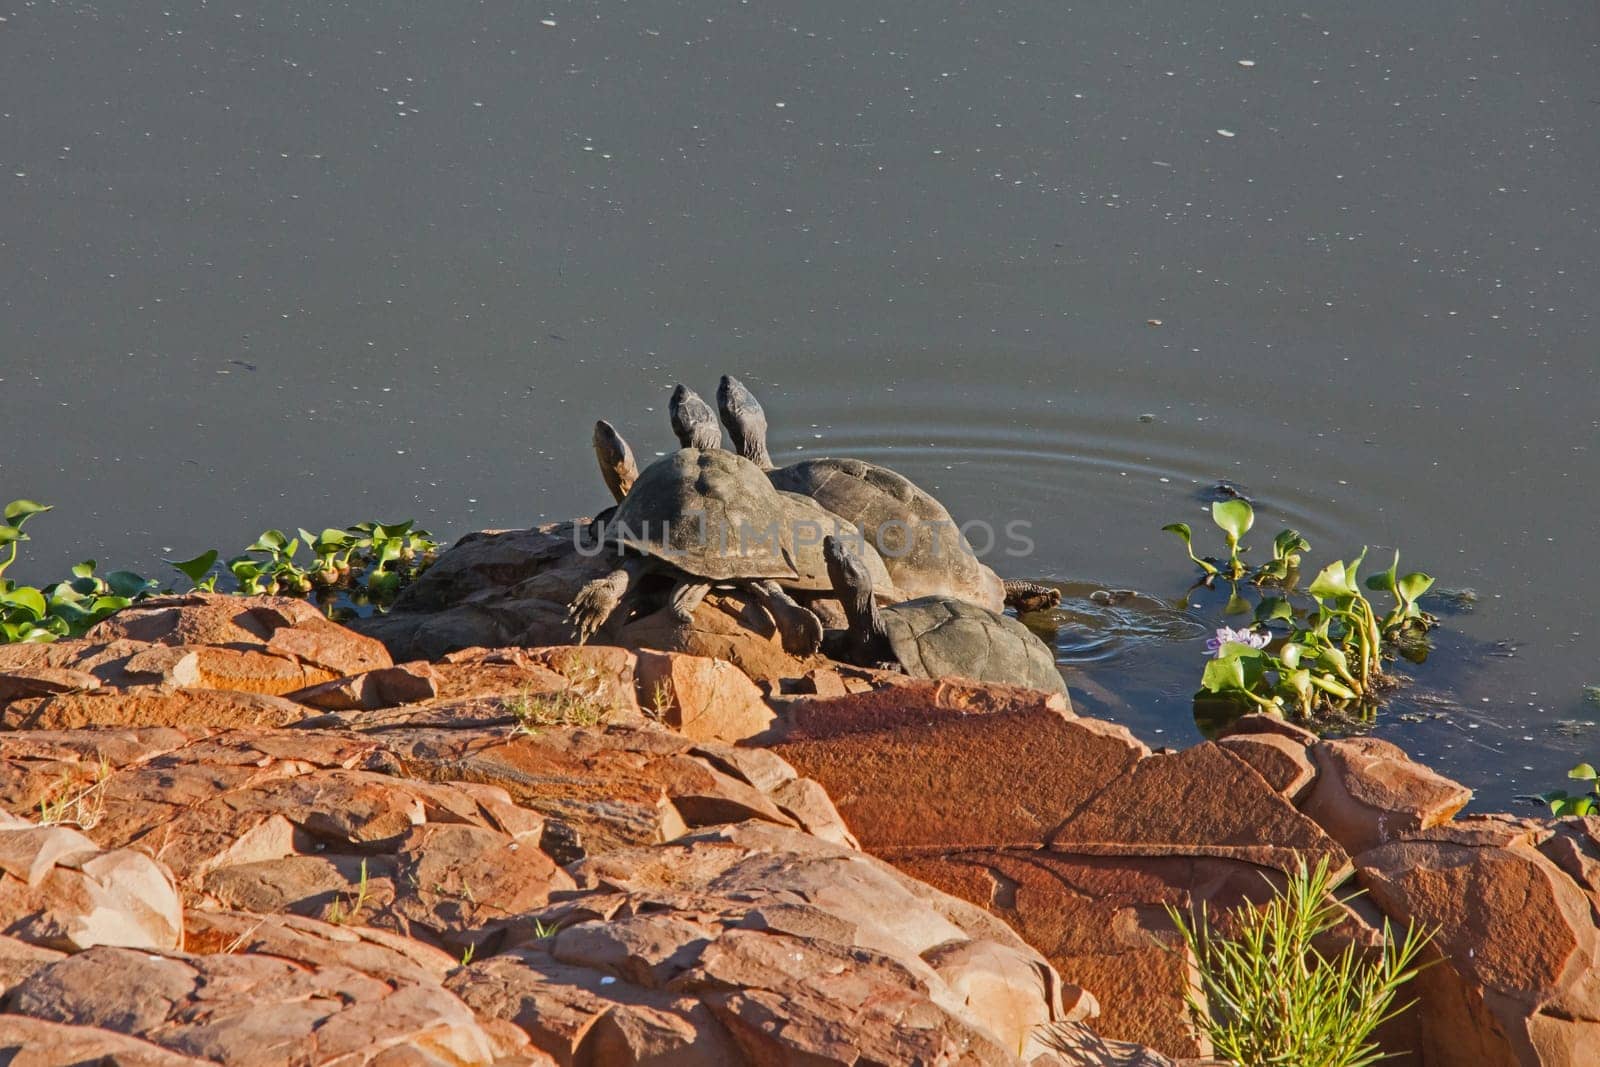 Sunbathing African Helmeted Turtles (Pelomedusa subrufa) 13509 by kobus_peche